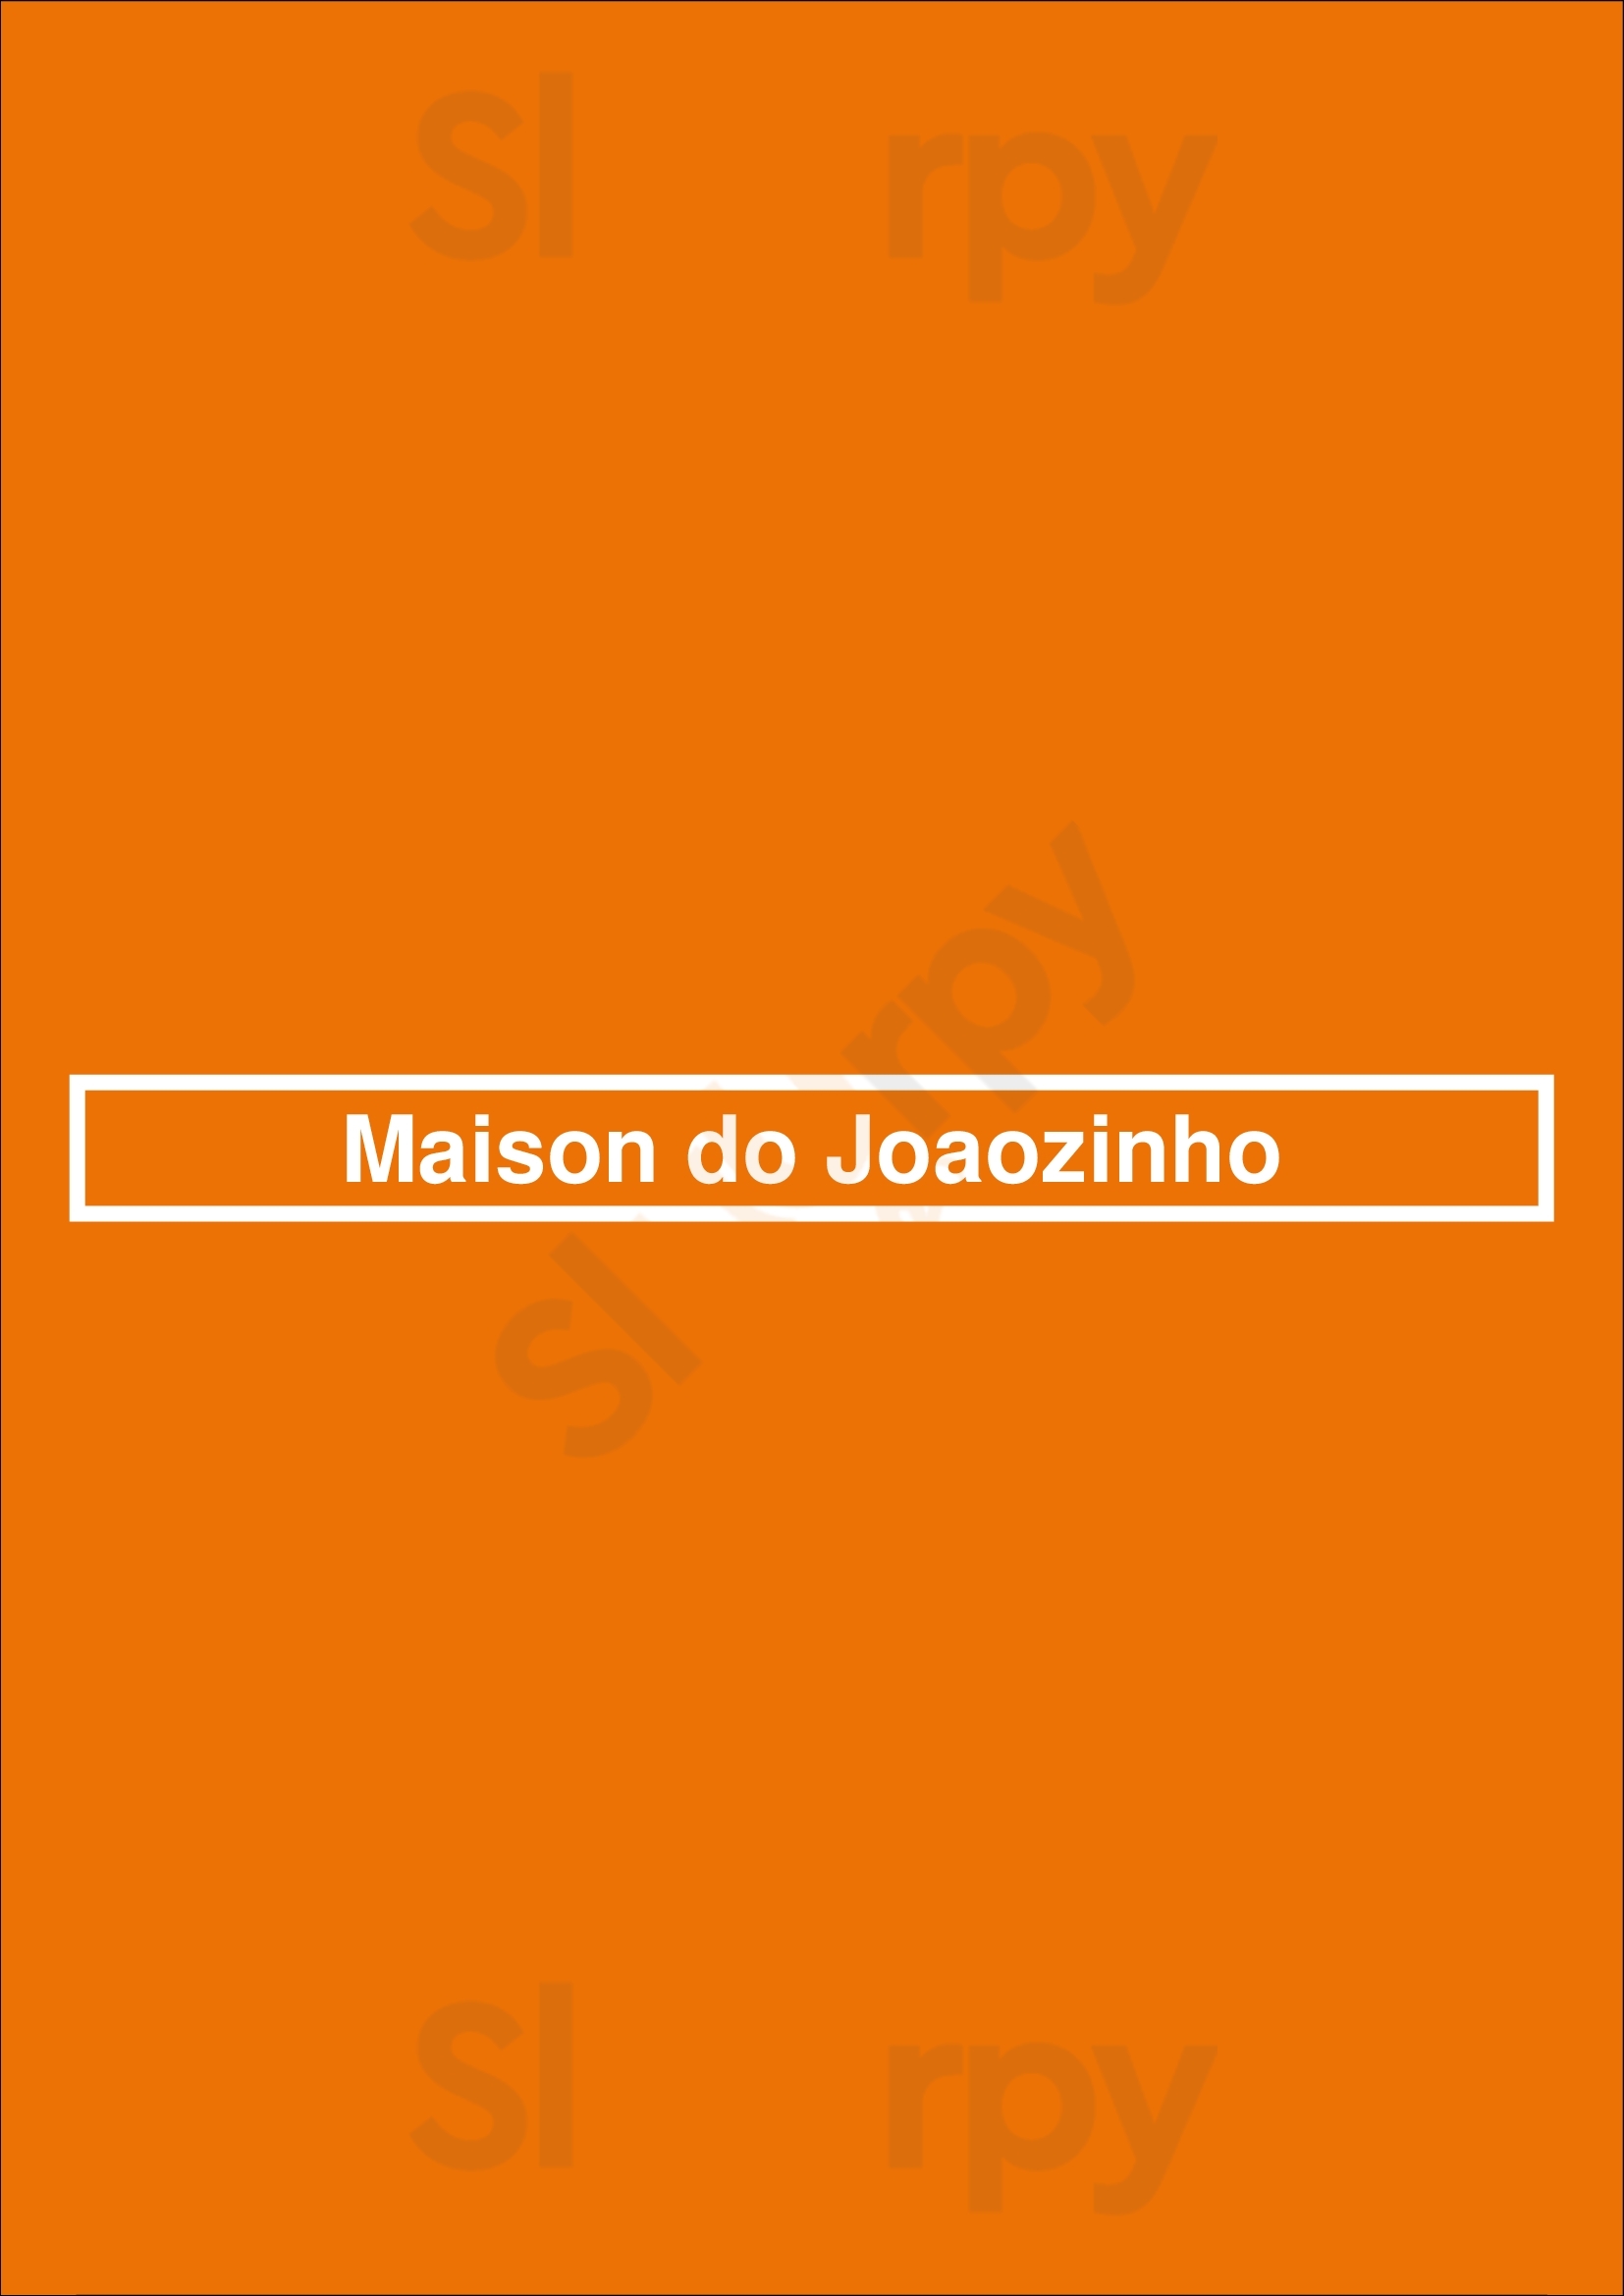 Maison Do Joaozinho Porto Menu - 1